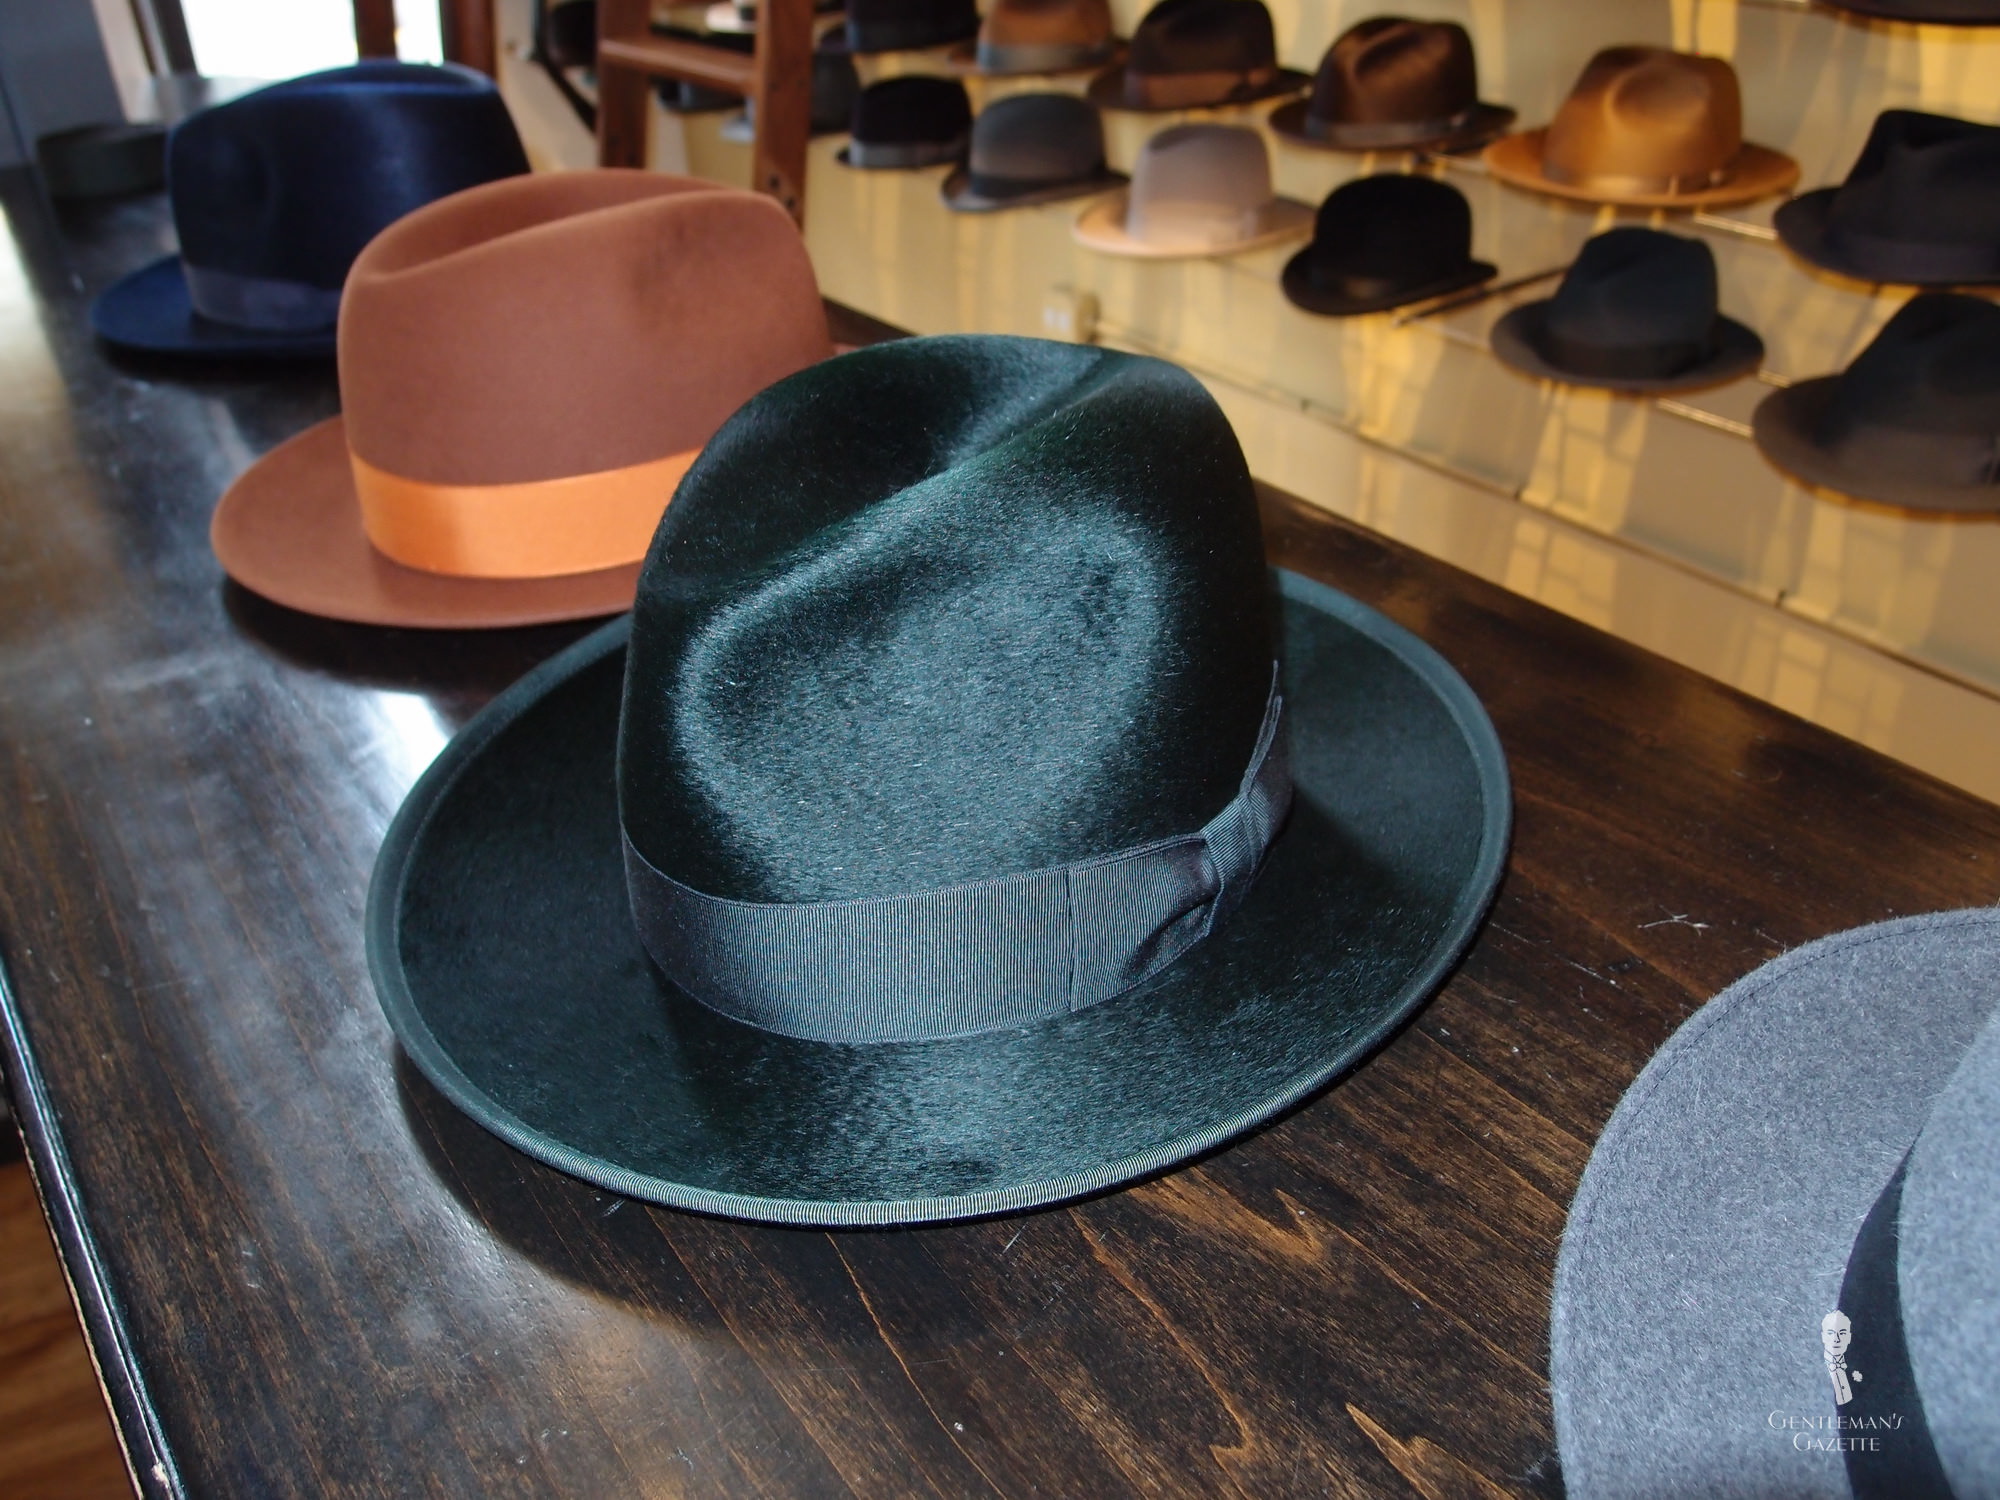 Crushable-Waterproof 100% Wool EALING POET Tall Bowler hat Large Open Crown UK